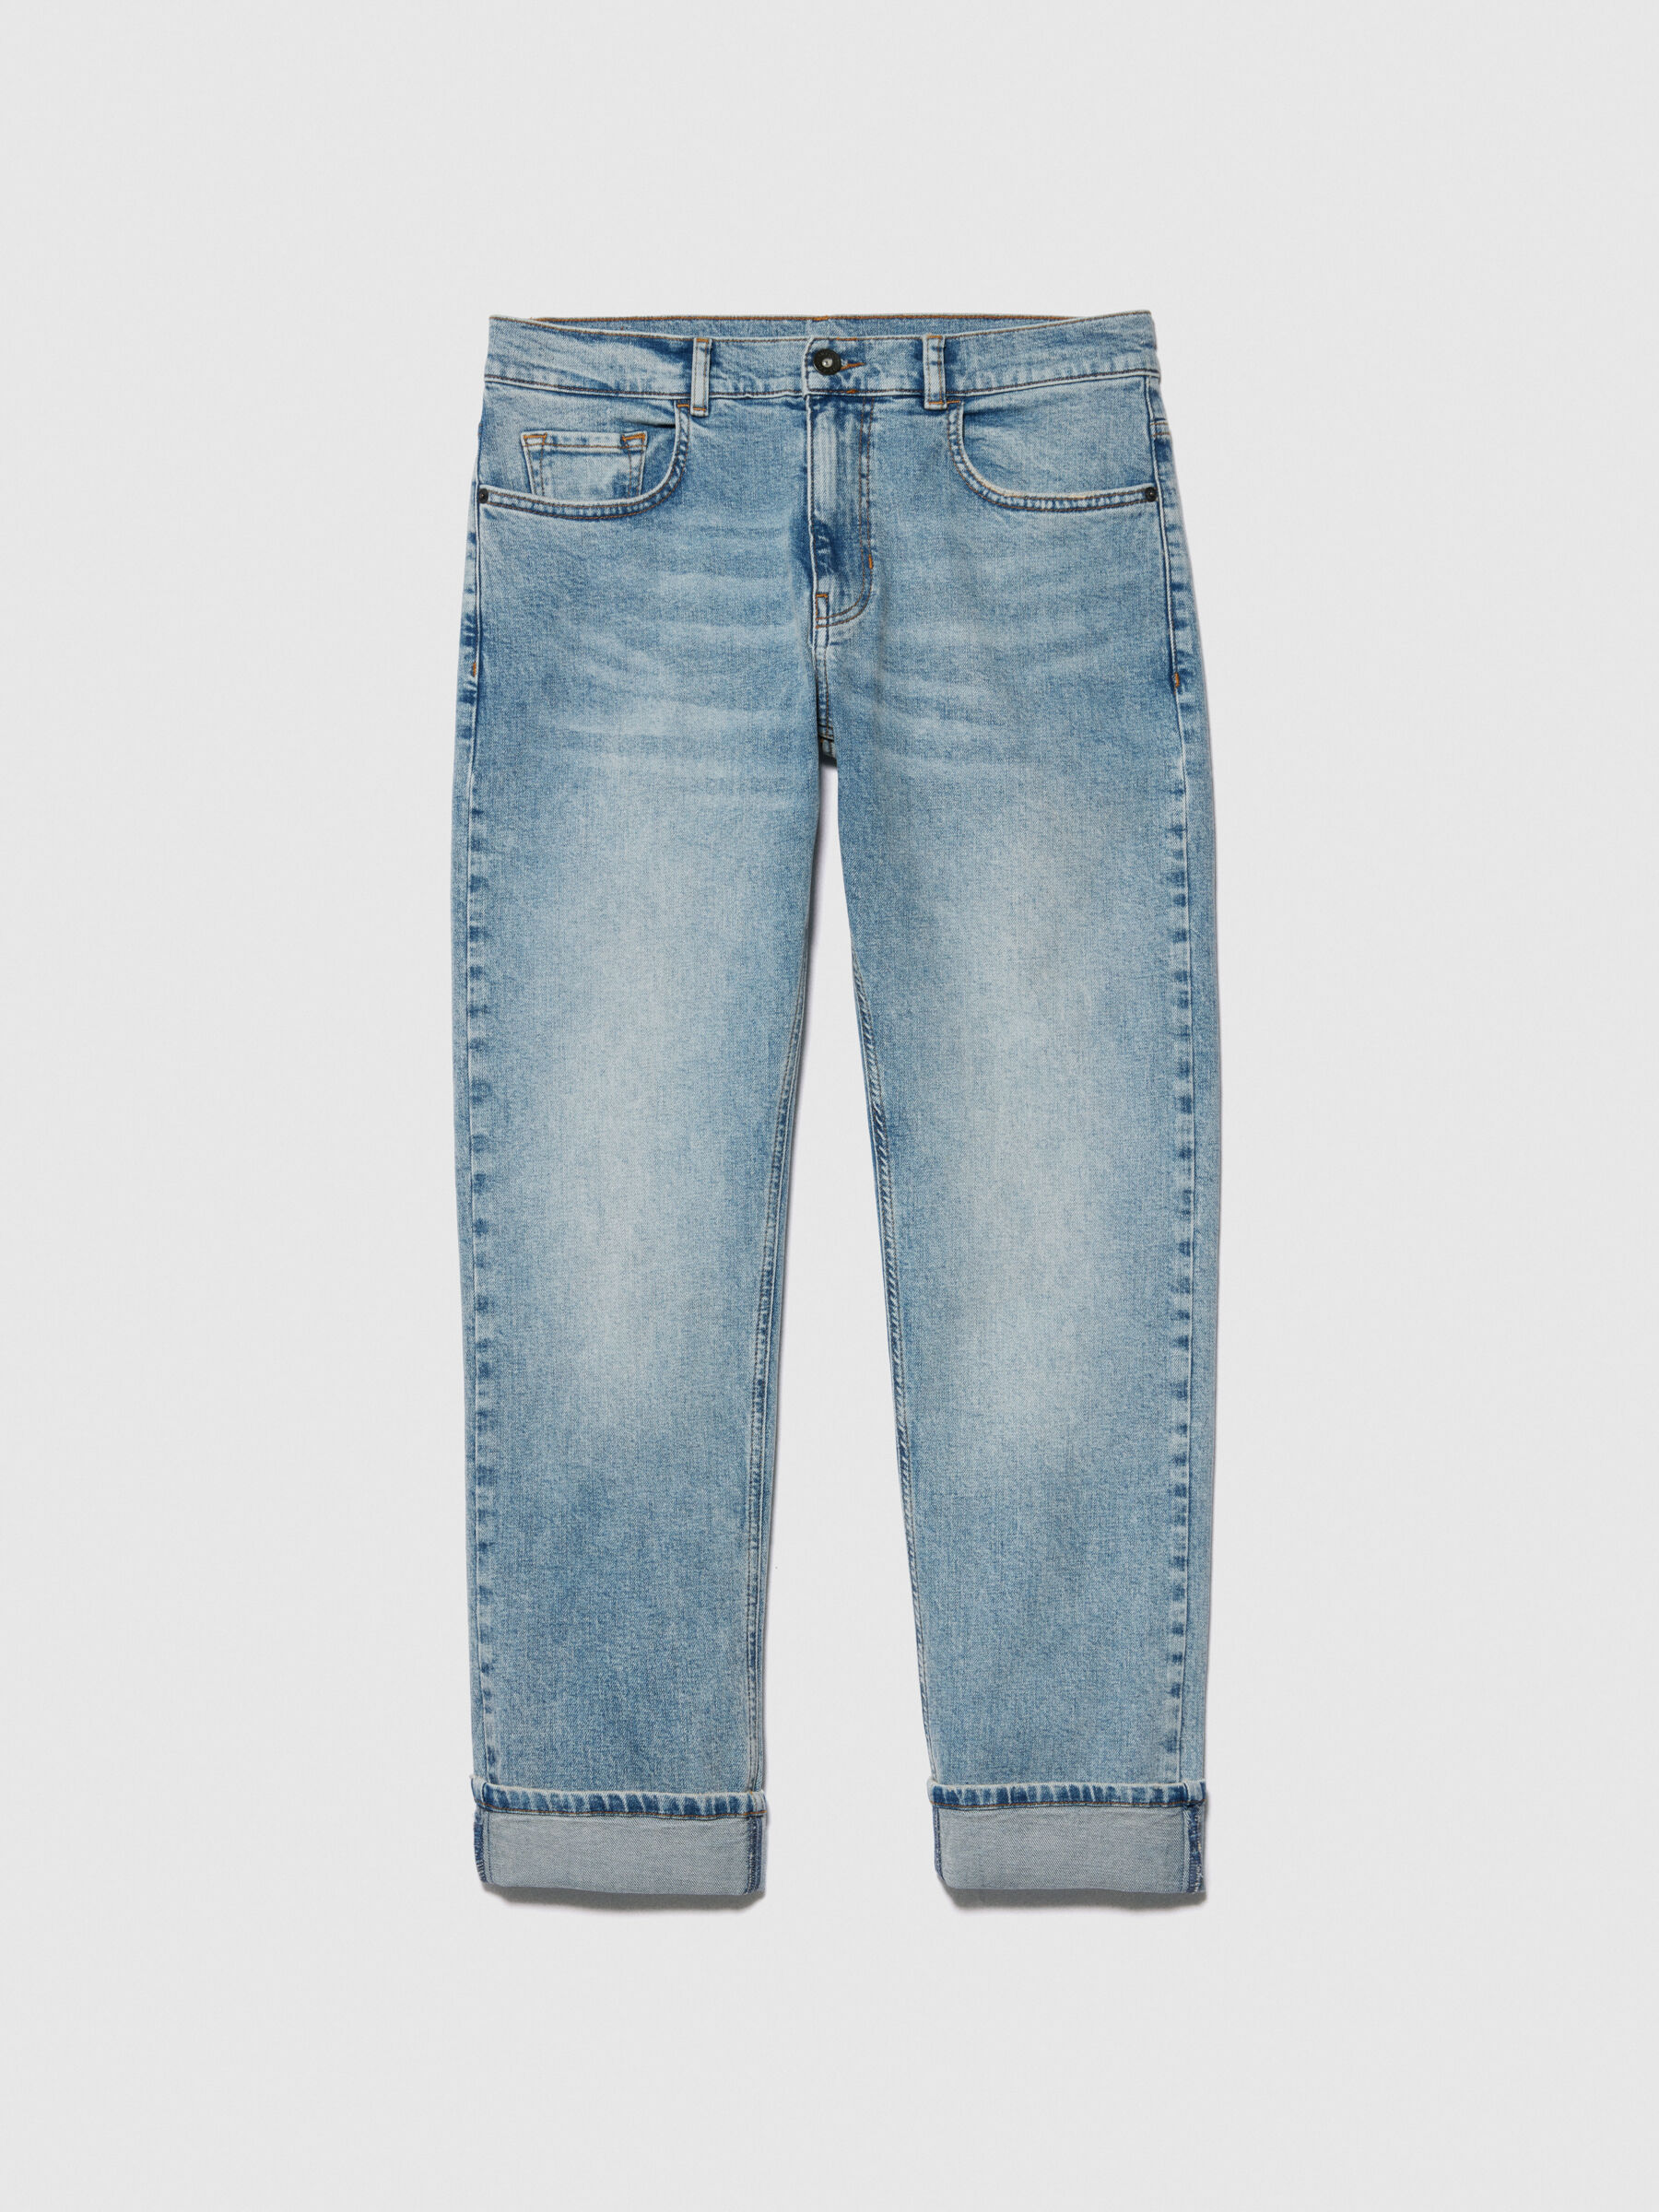 Blue Front Pocket Denim Jeans ‐ Phix